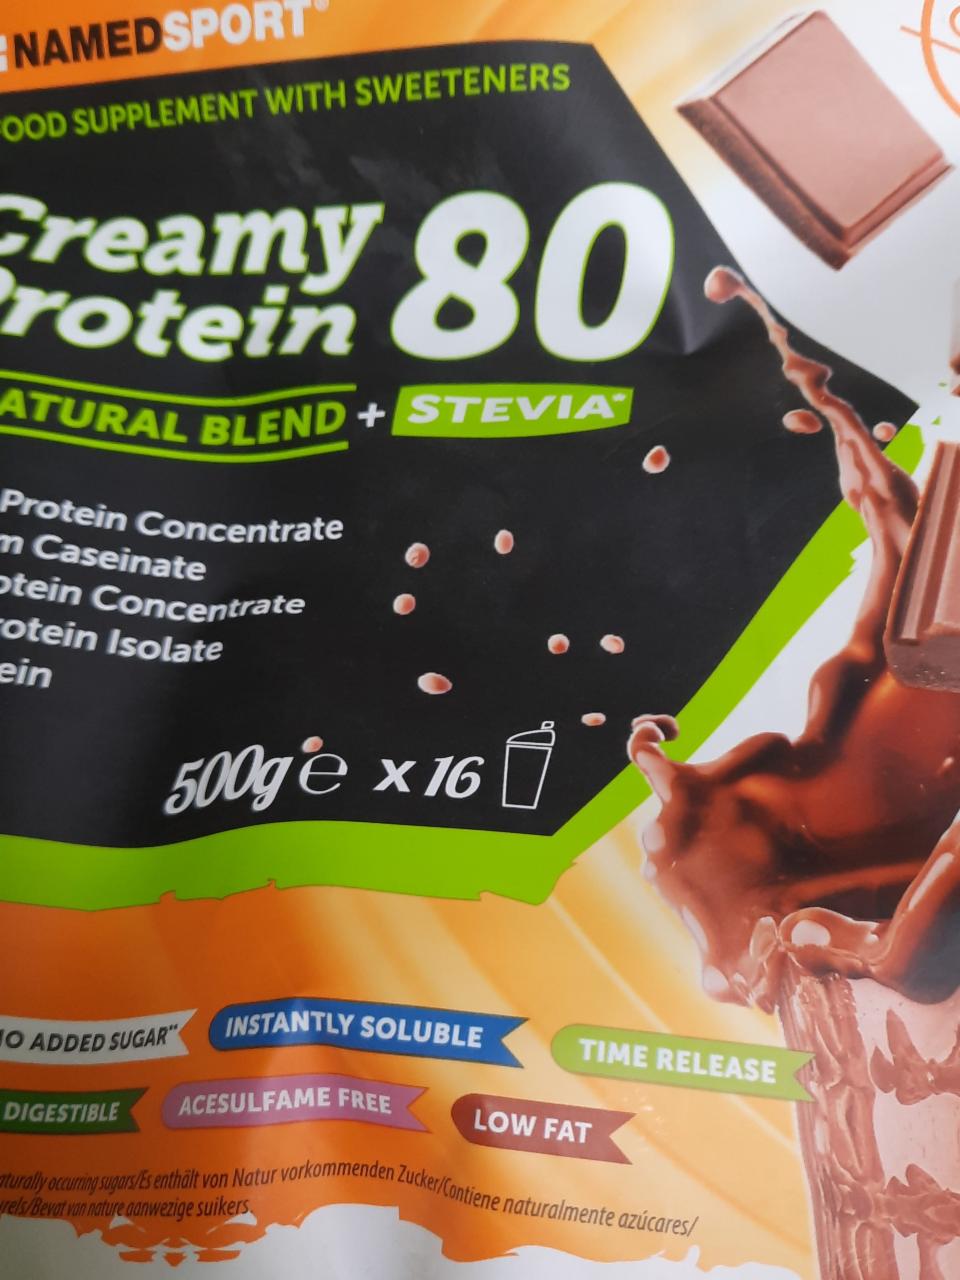 Fotografie - creamy protein 80